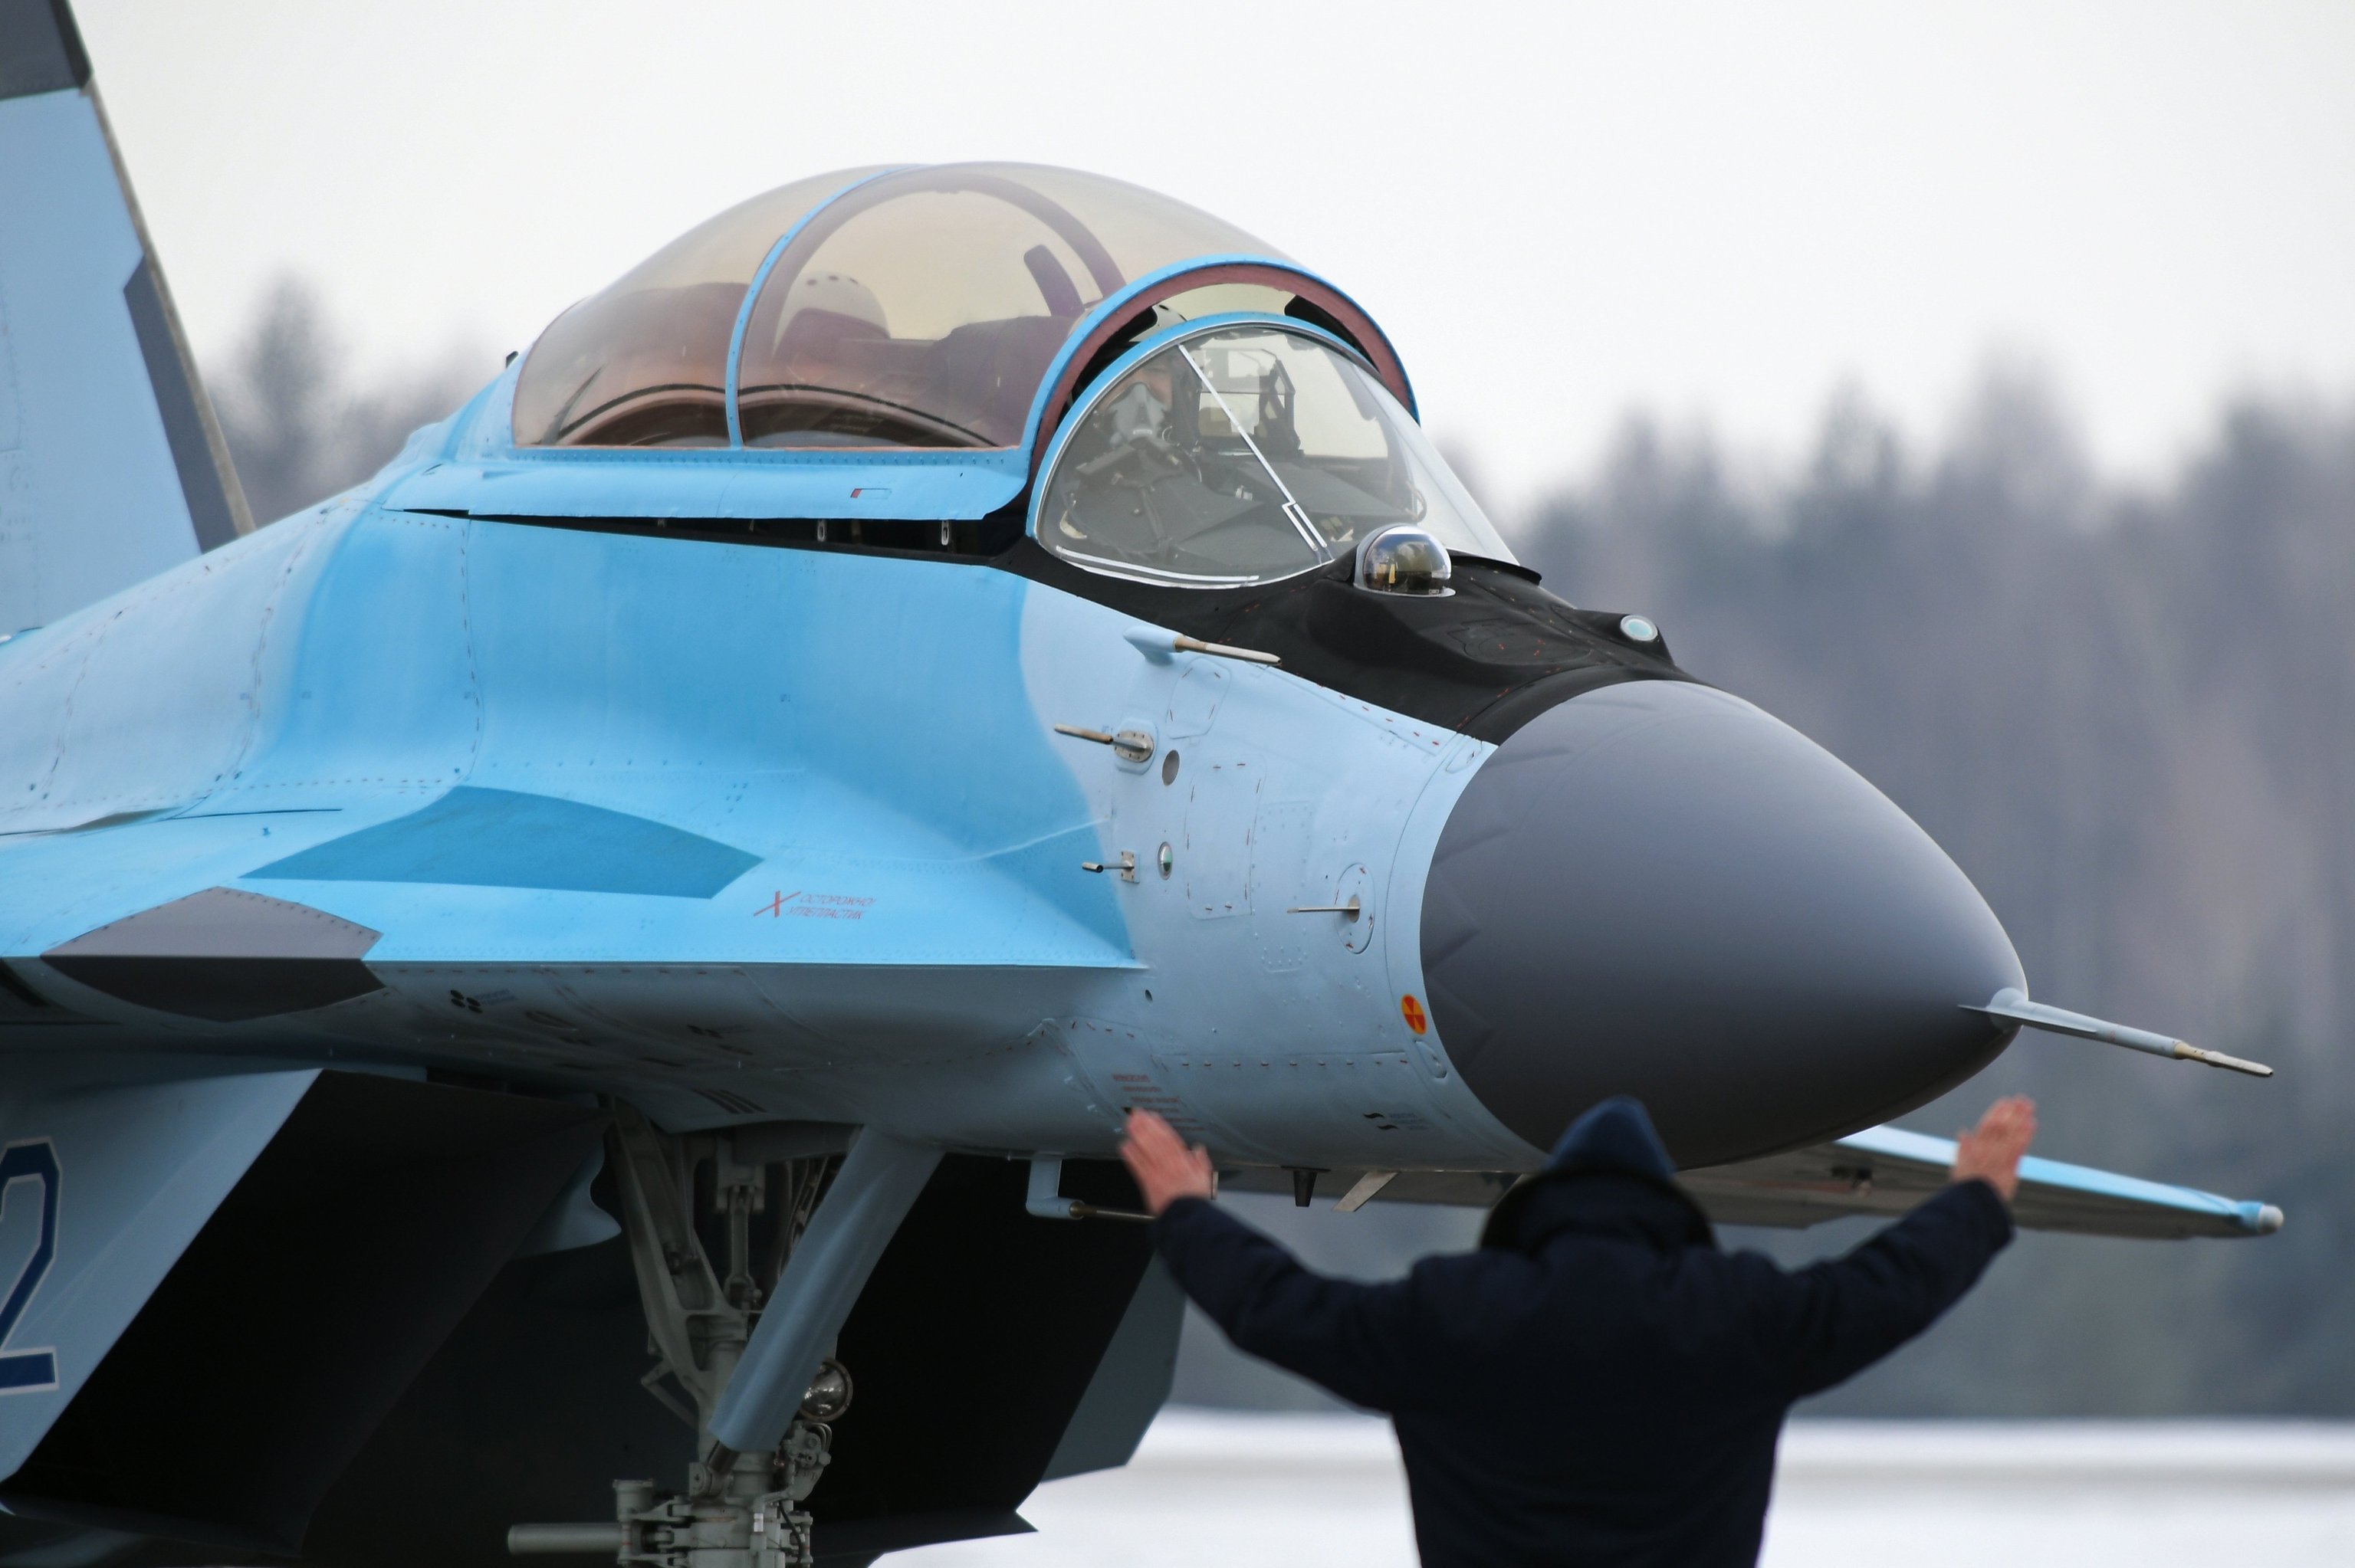 Авиационный комплекс МиГ-35